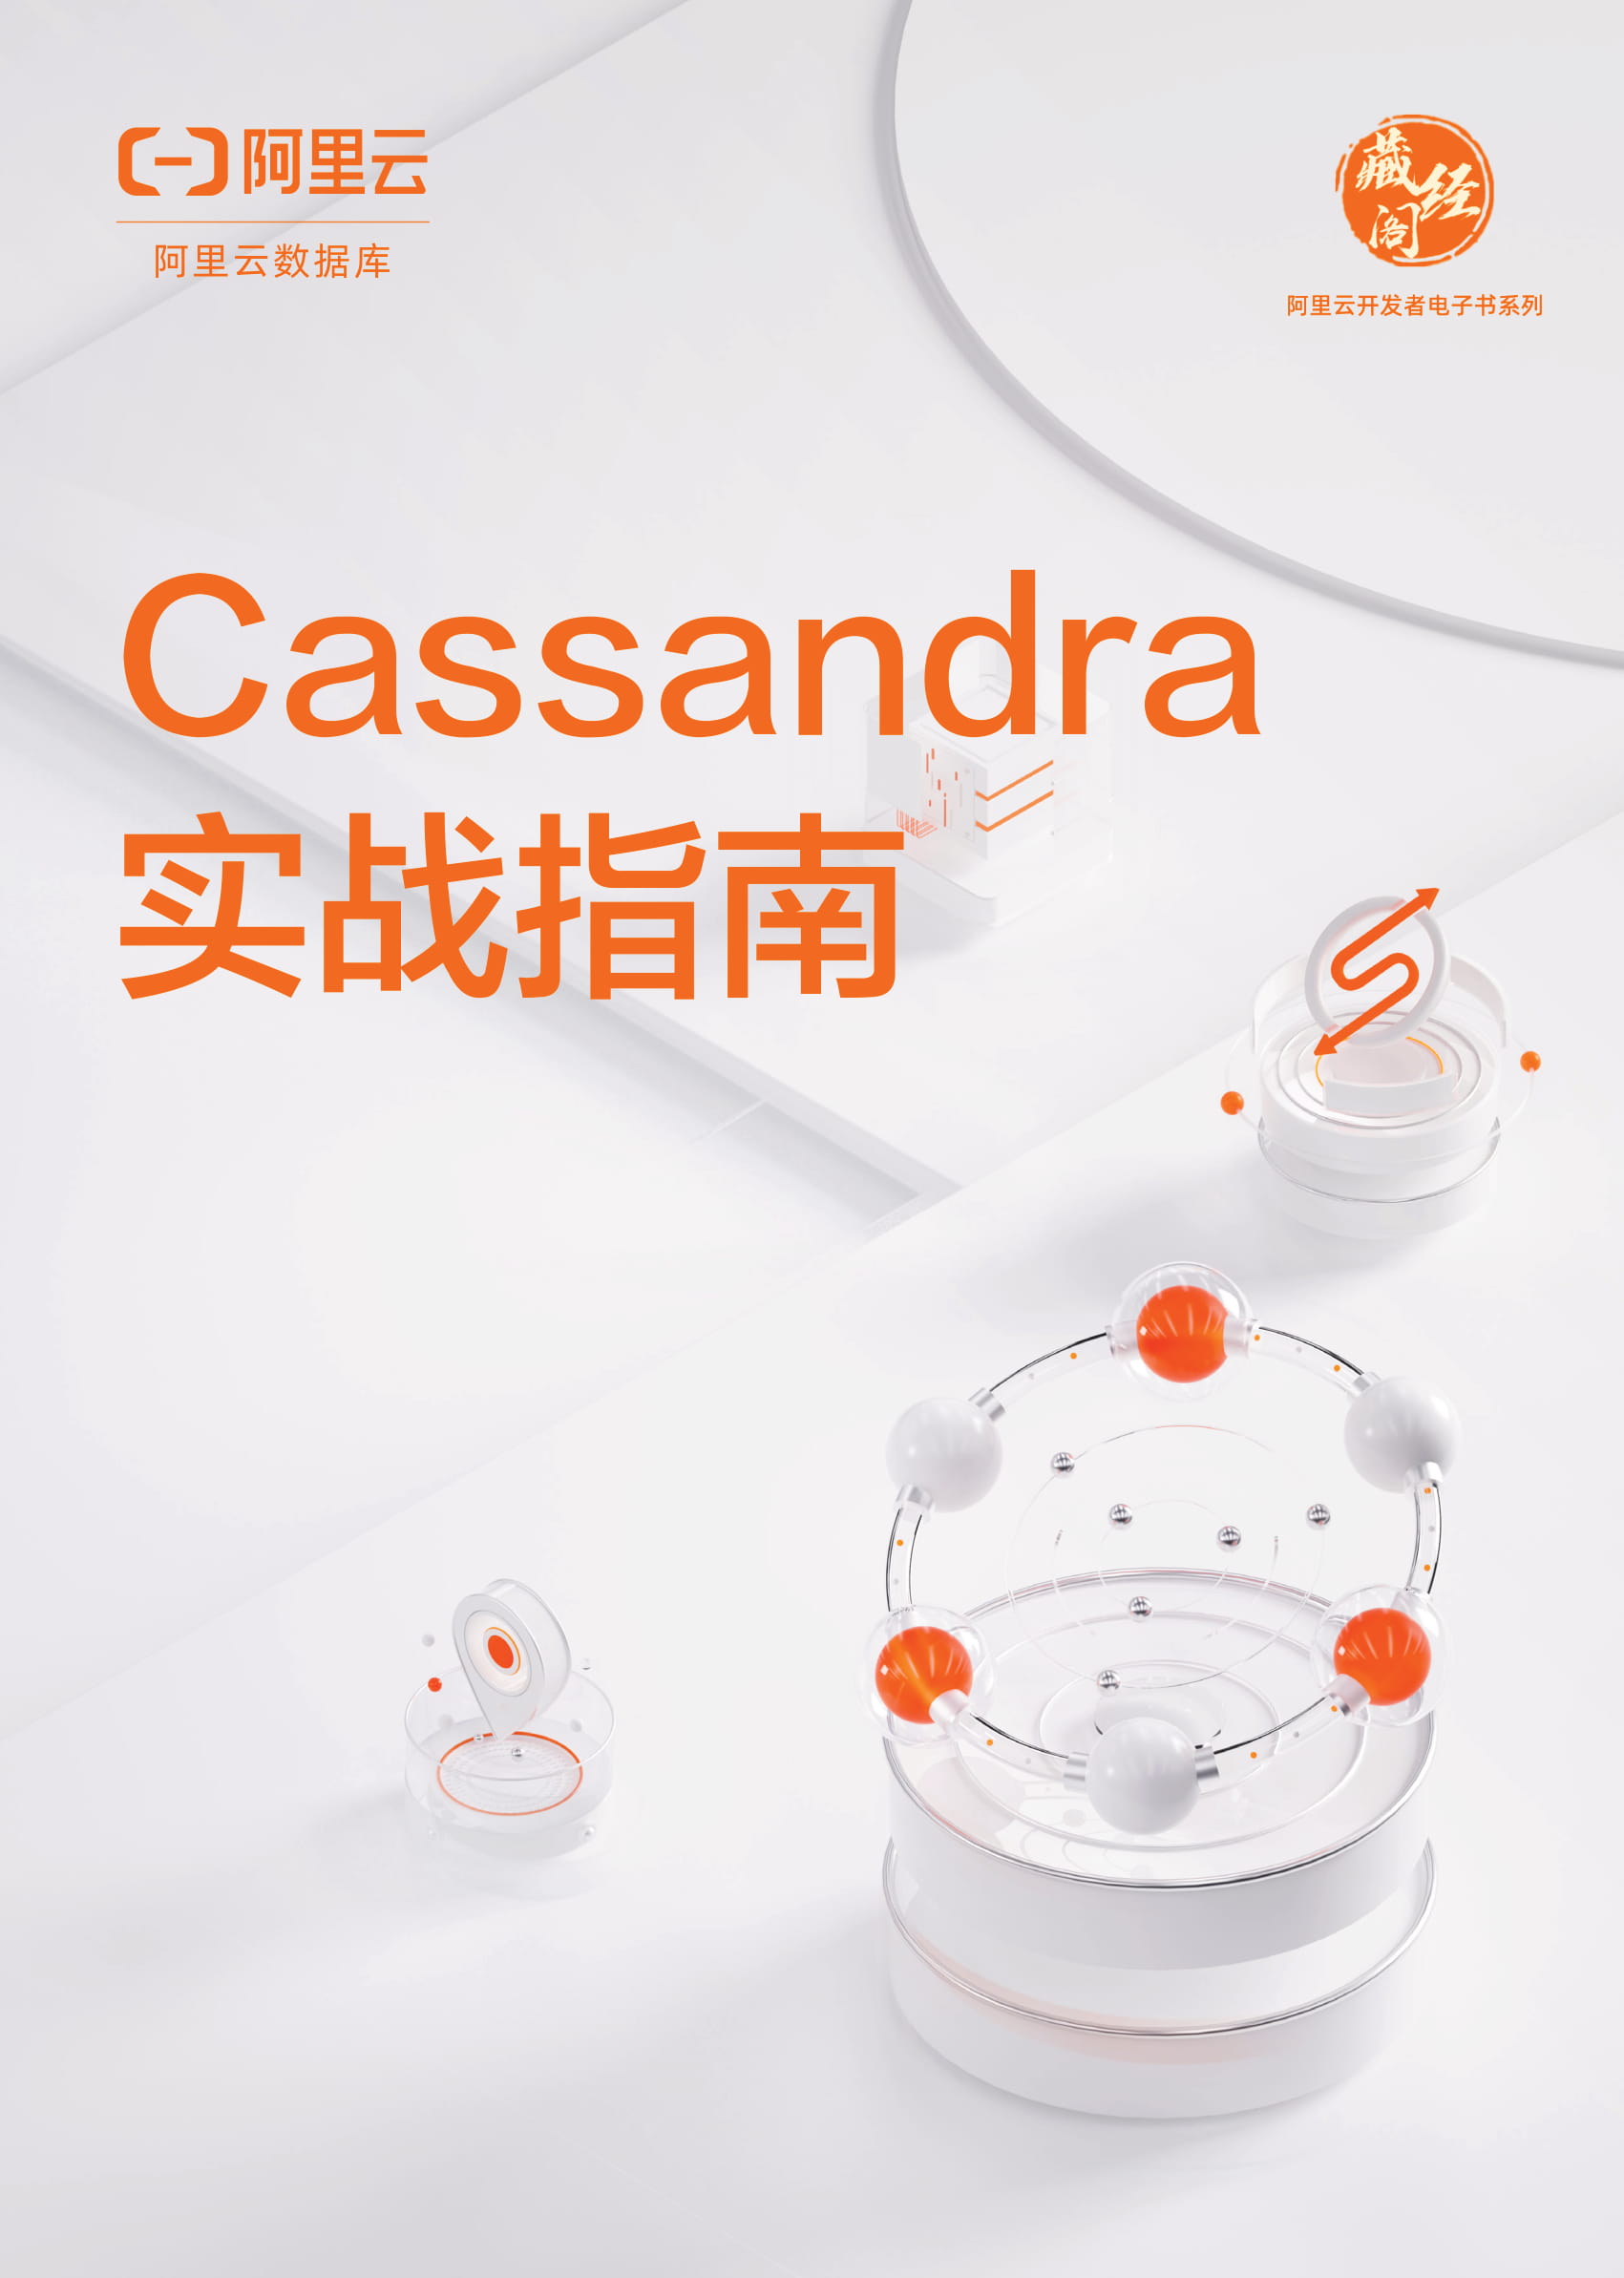 独家下载 | Cassandra实战指南 探索云计算与AI浪潮下的下一个职业风口